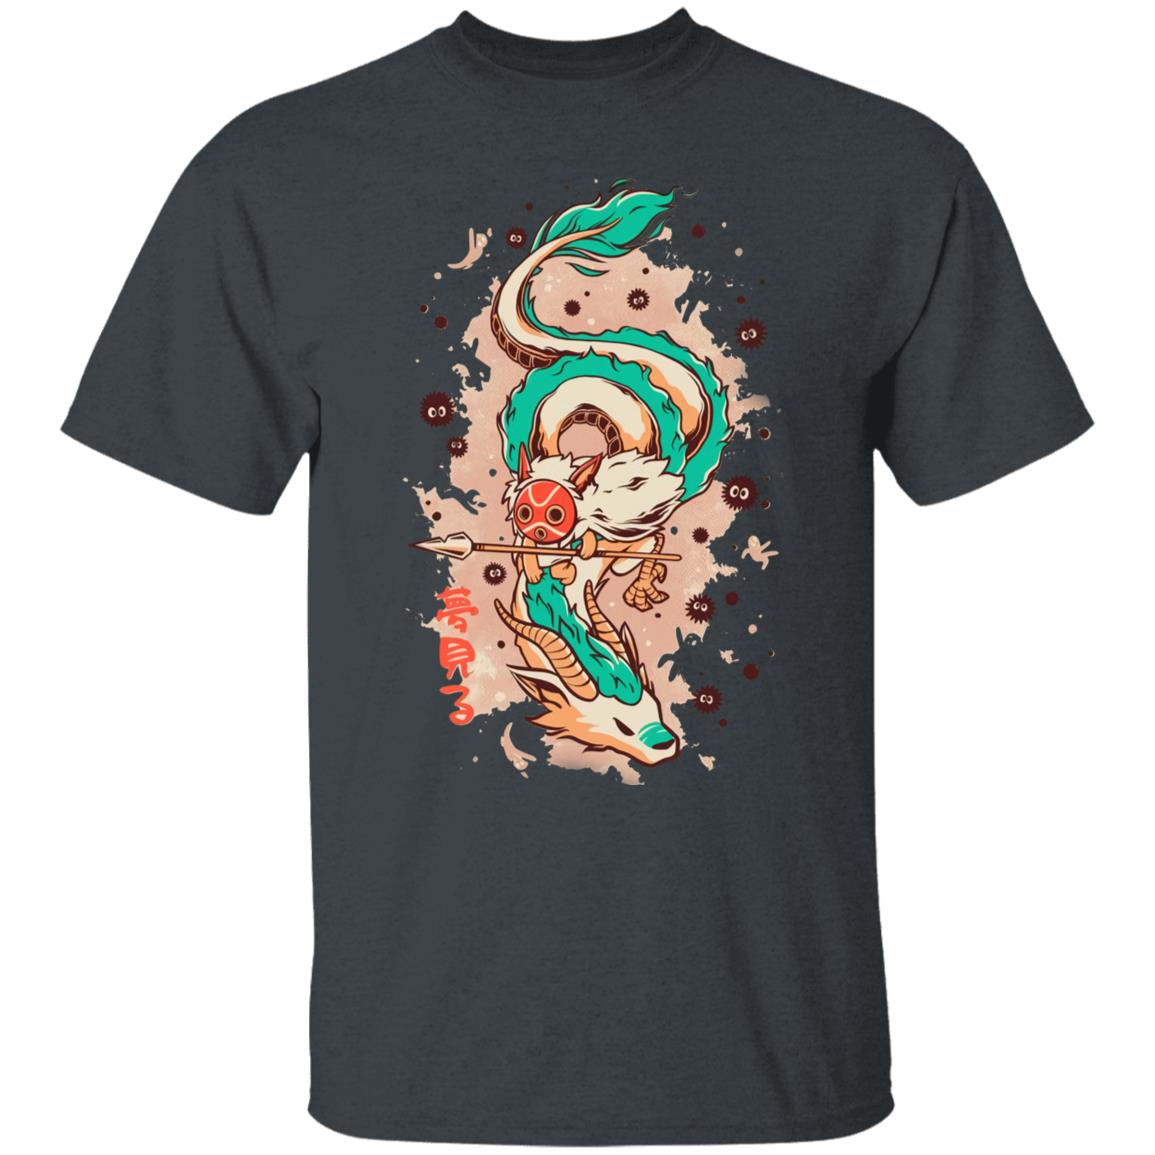 Princess Mononoke on the Dragon T Shirt Ghibli Store ghibli.store